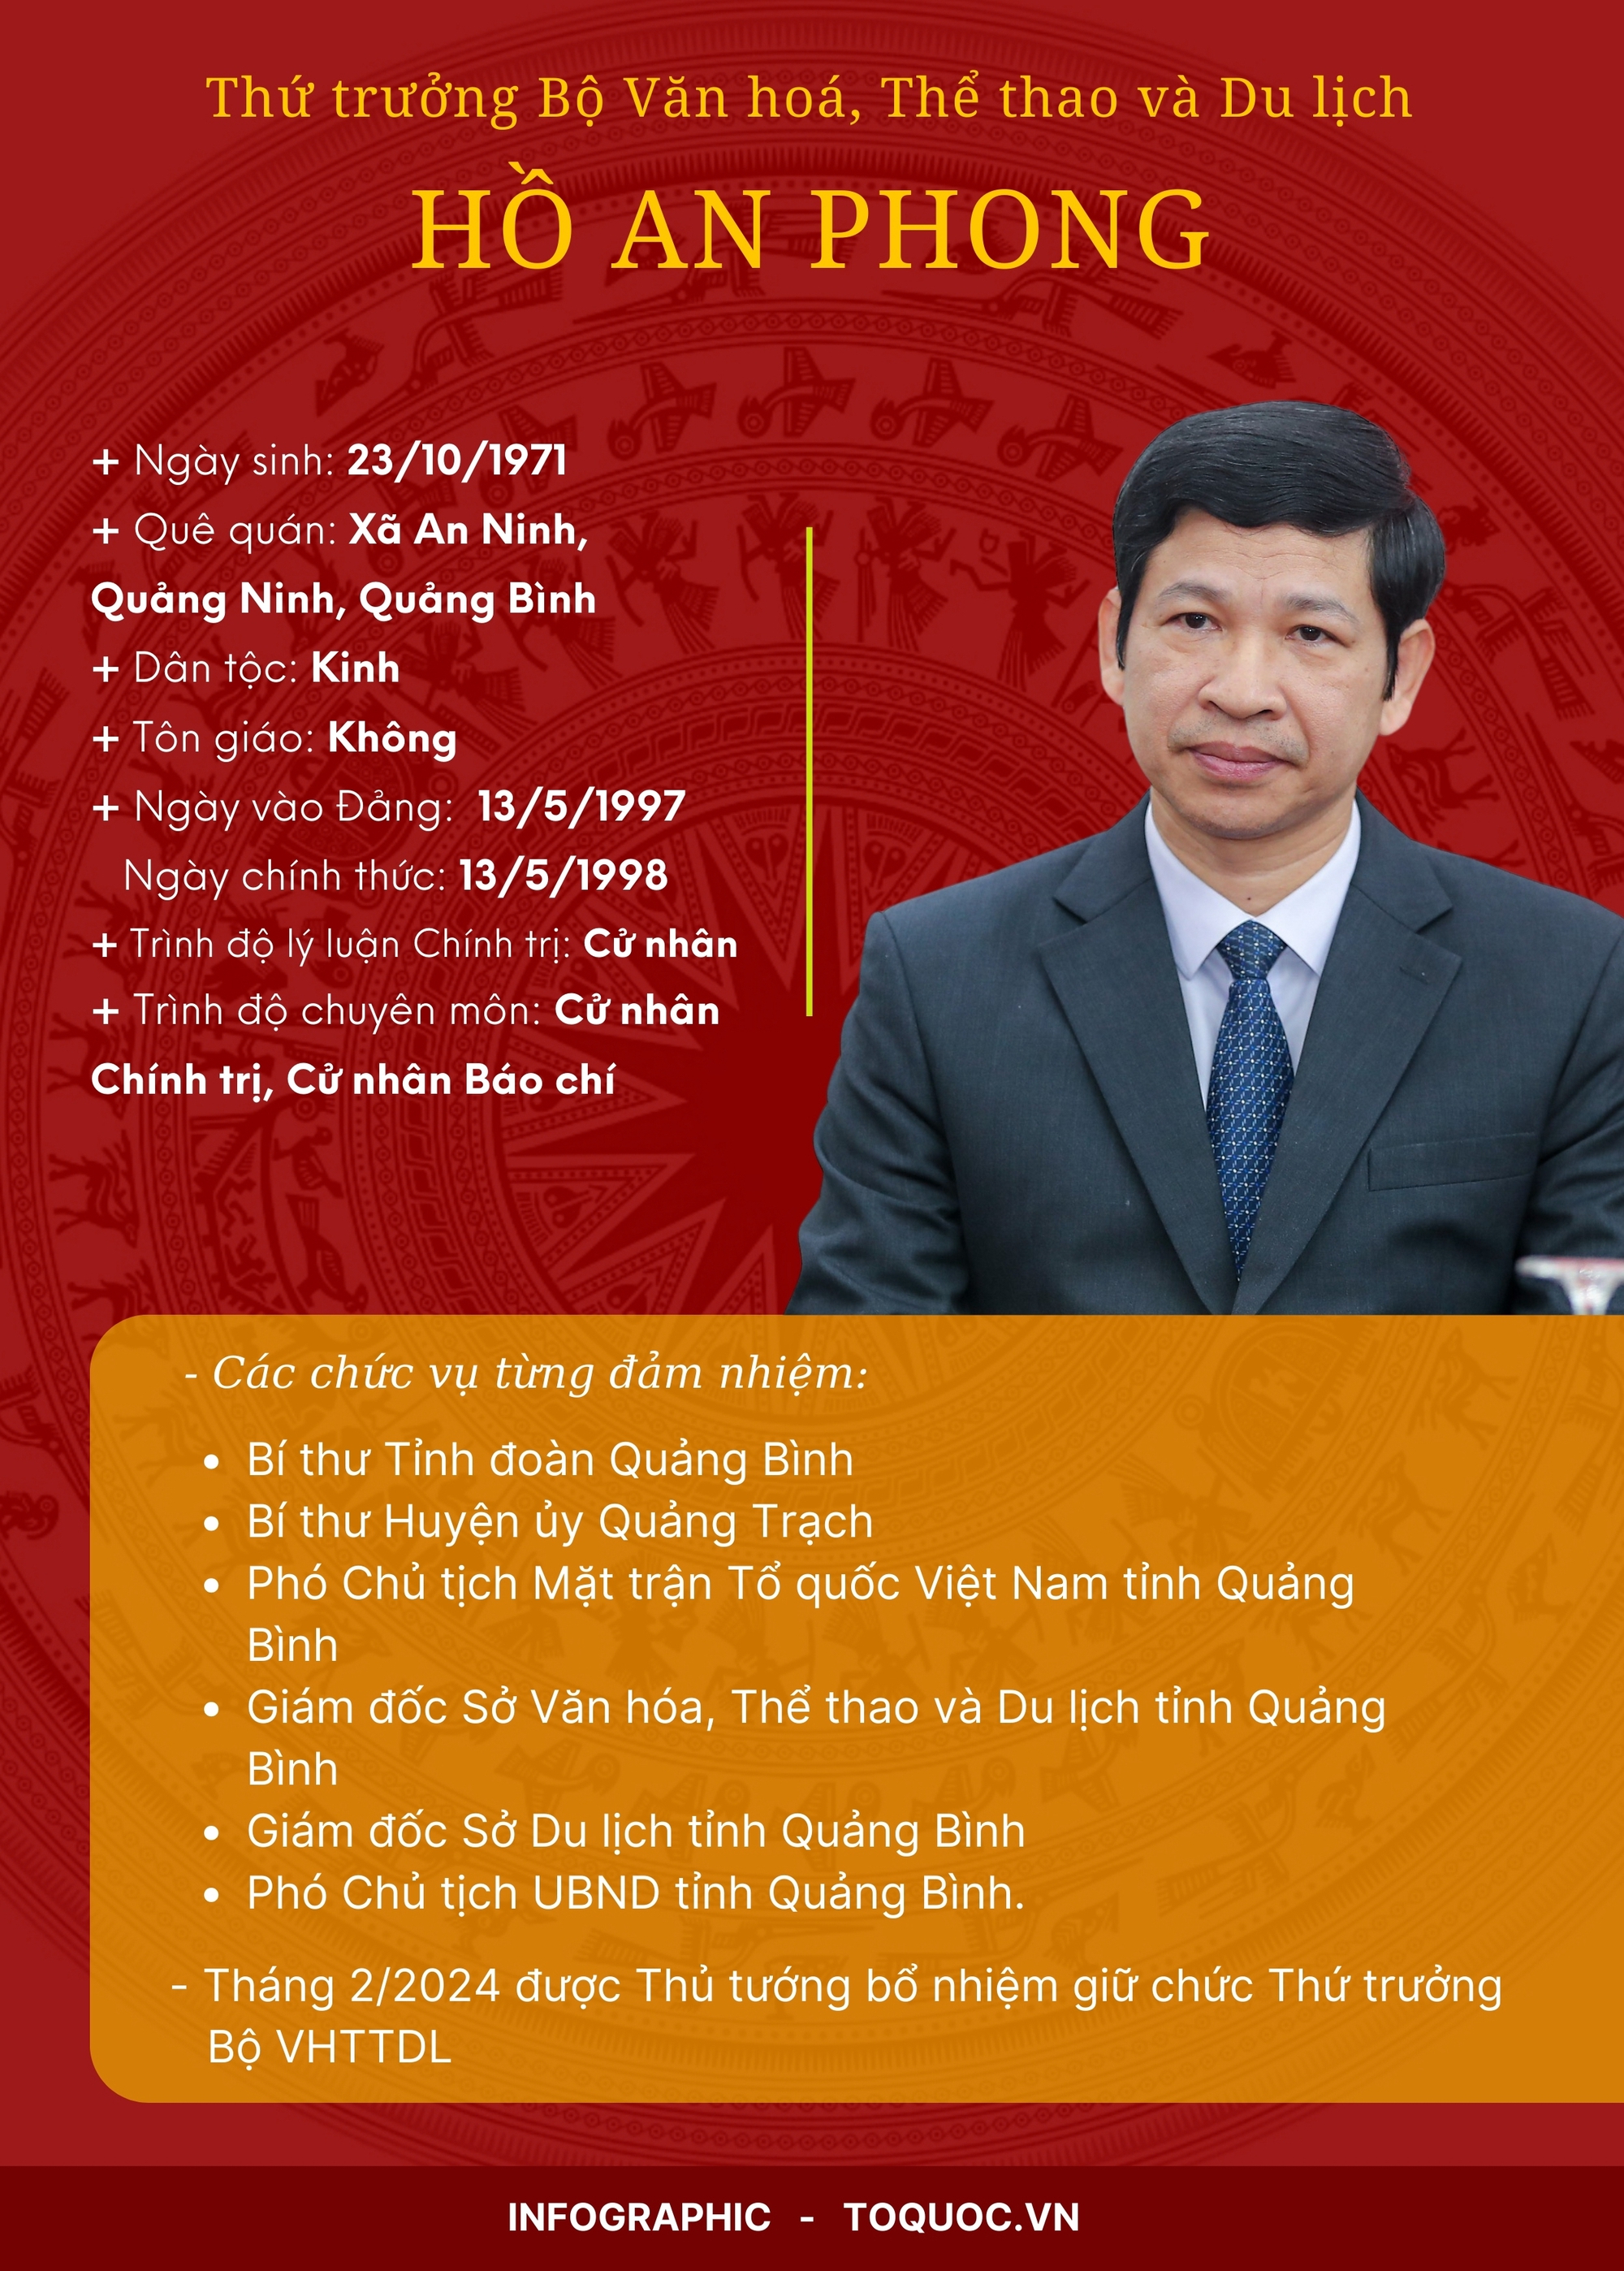 Trao quyết định bổ nhiệm ông Hồ An Phong giữ chức Thứ trưởng Bộ VHTTDL - Ảnh 6.